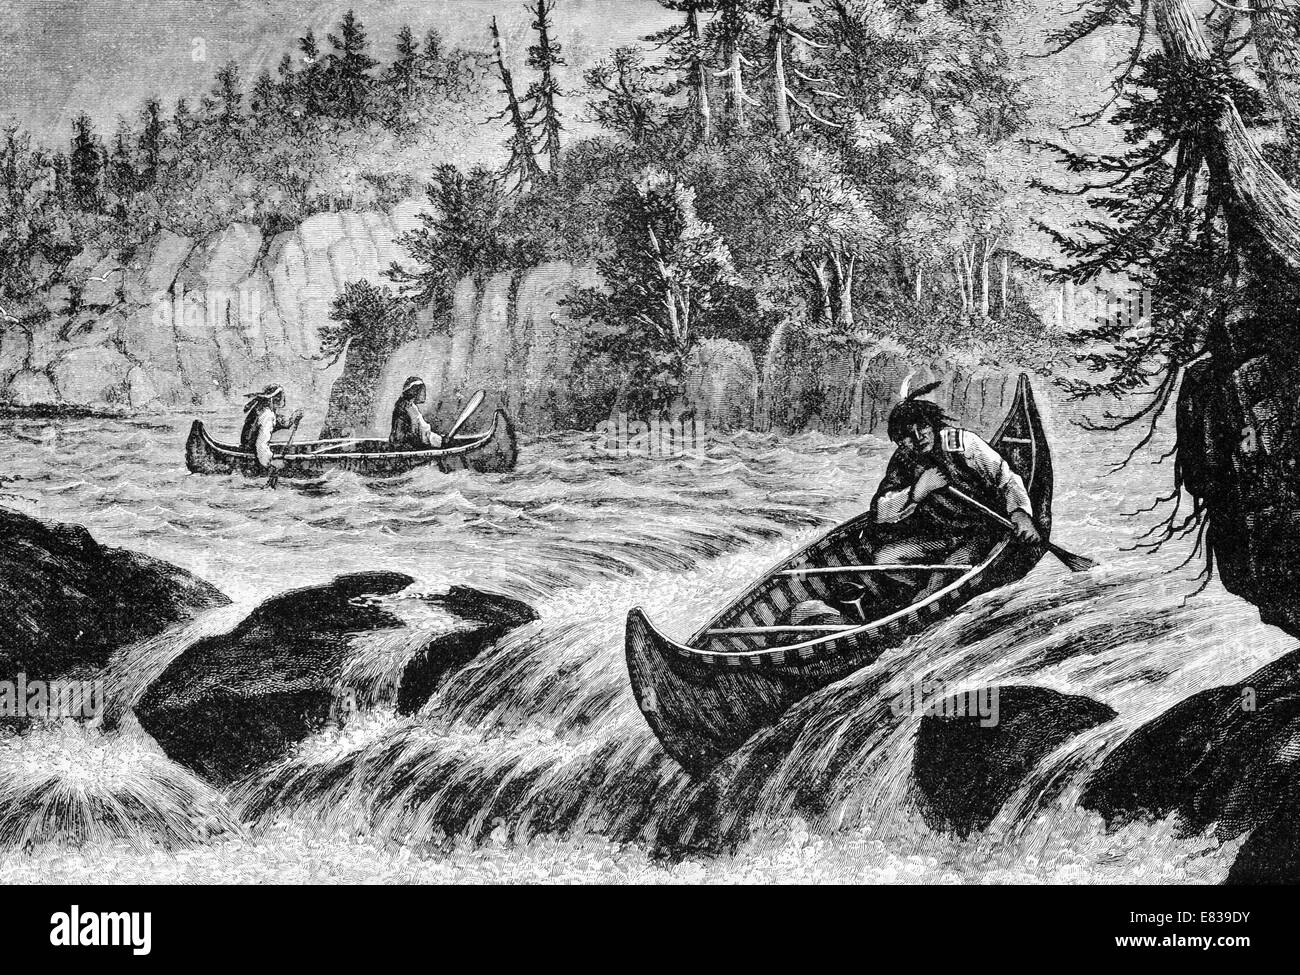 North American Indian pelle riprese di canoa fiume rapids circa 1885 Foto Stock